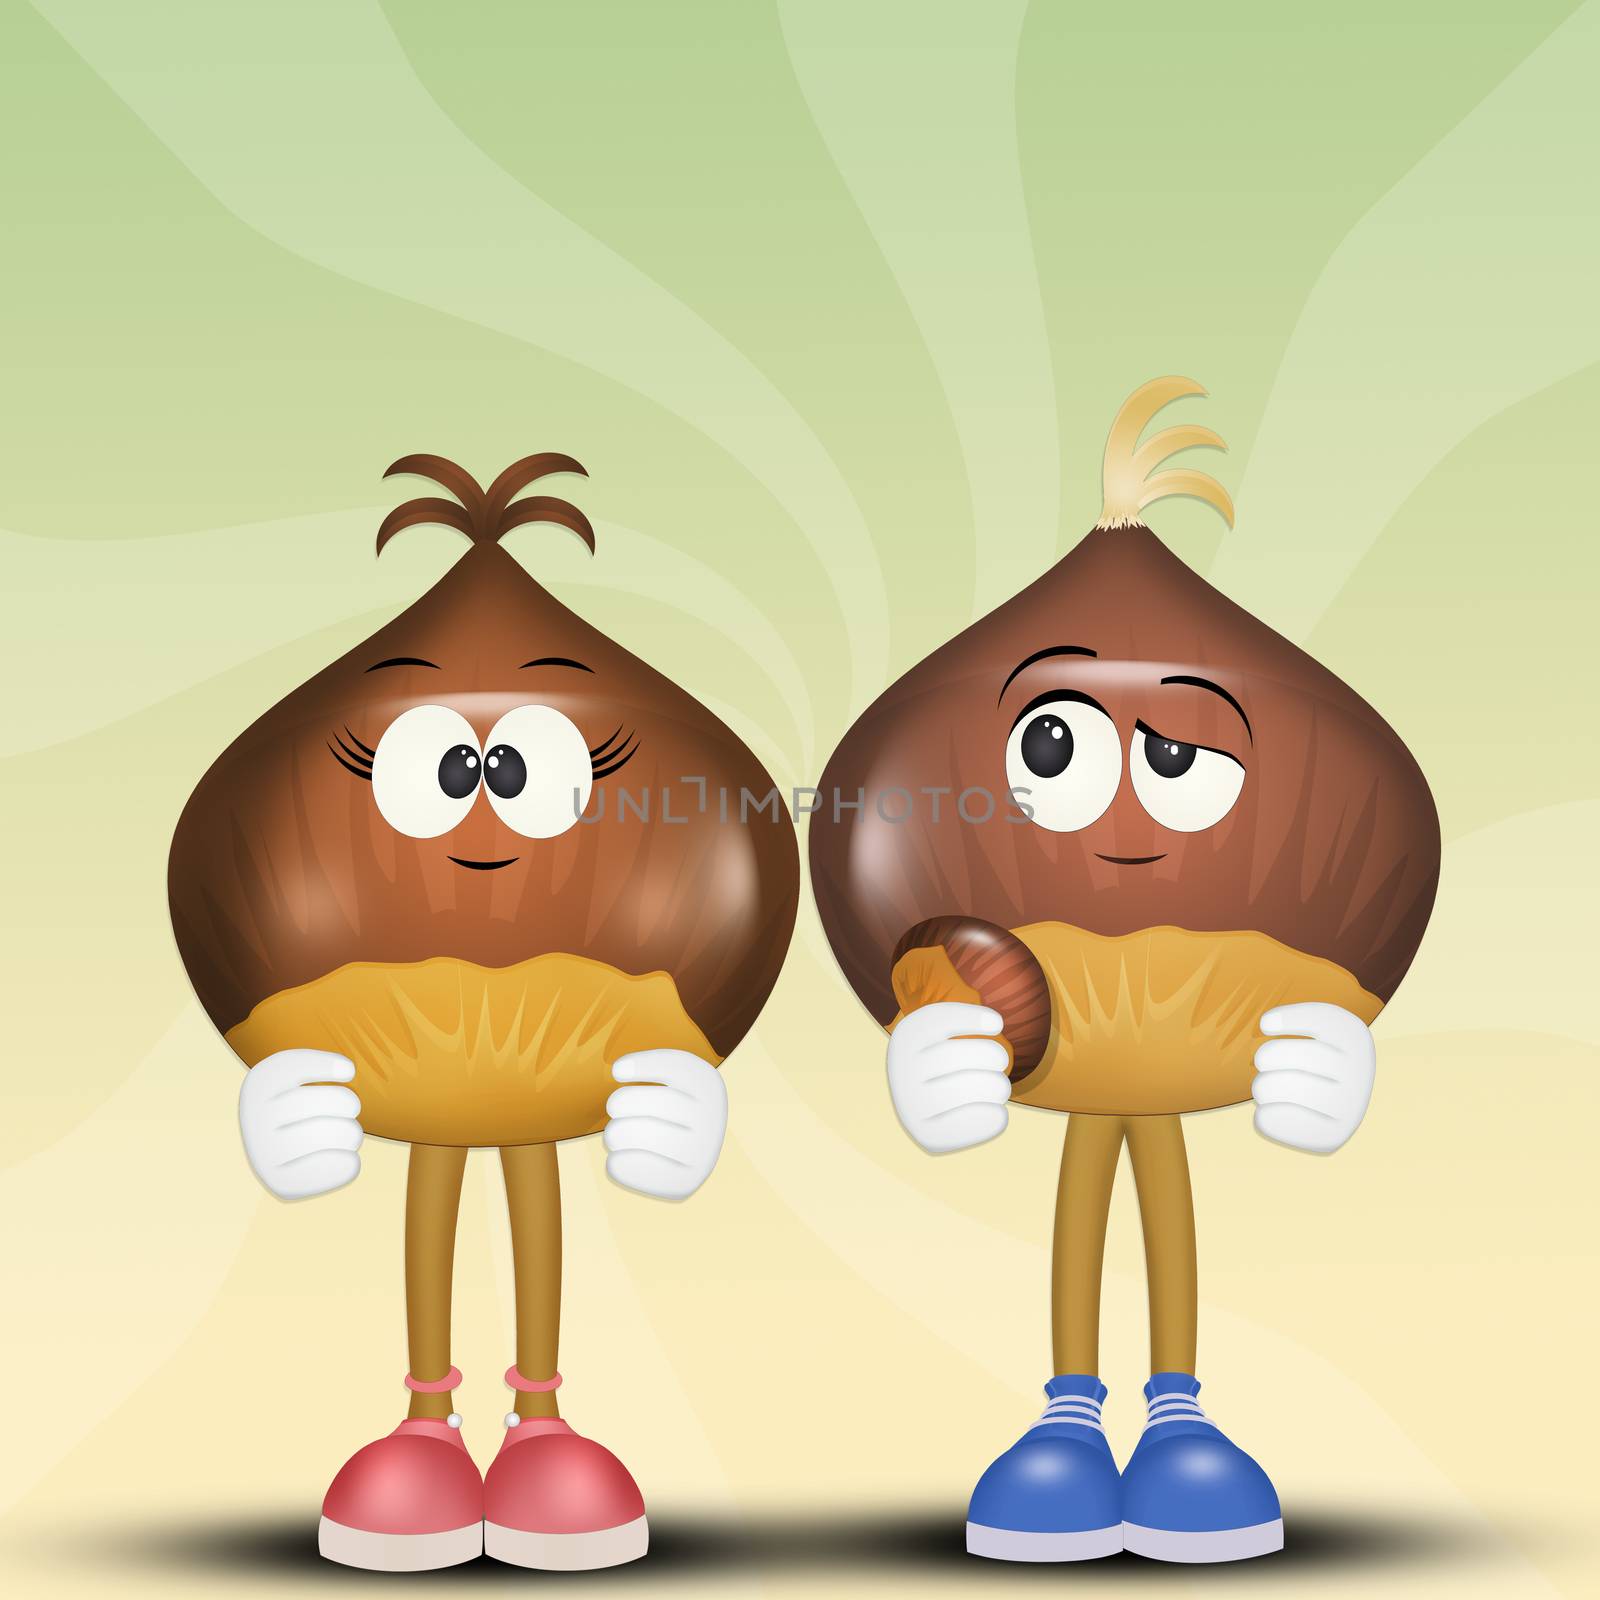 illustration of chestnuts cartoon